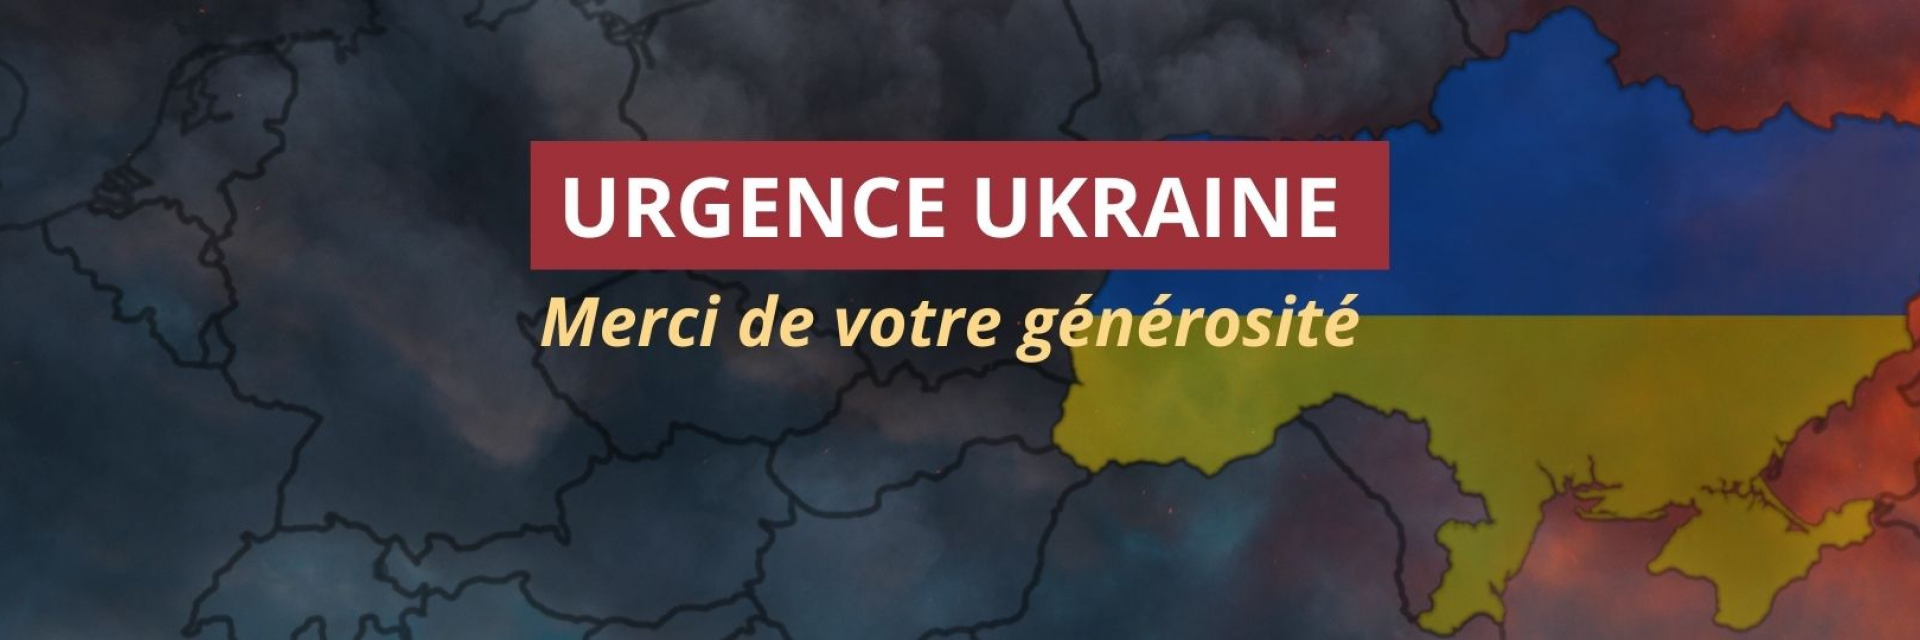 Urgence Ukraine merci